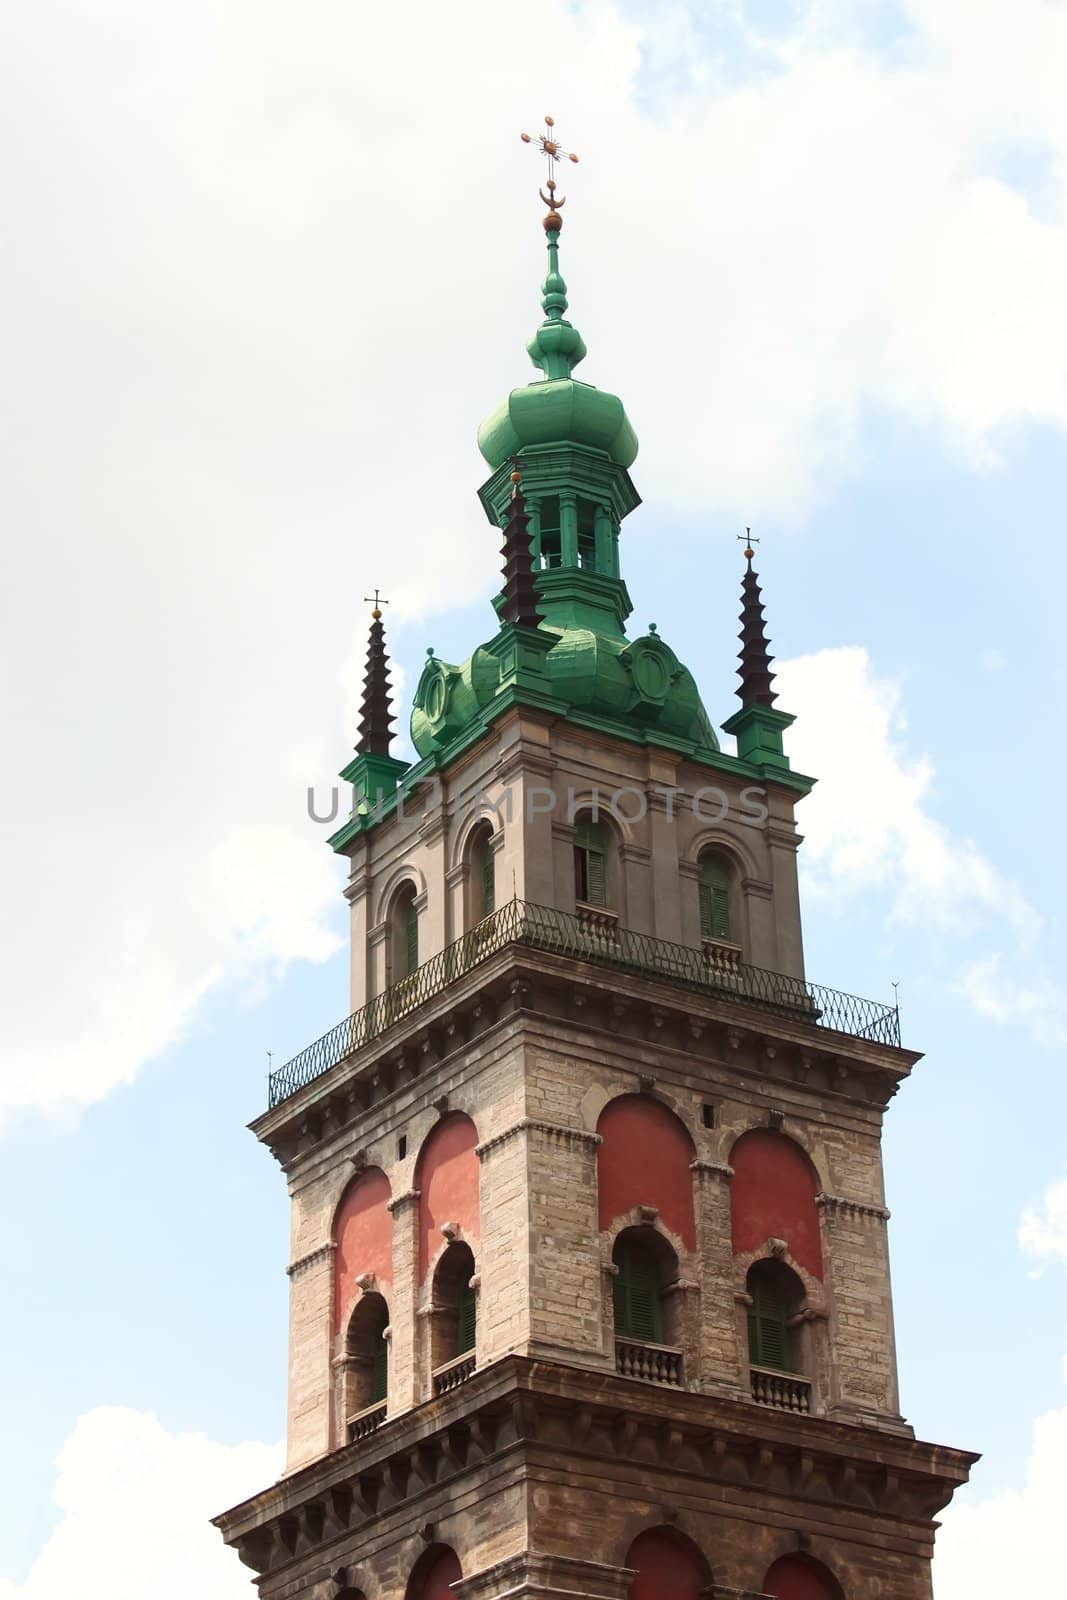 Belltower in Lviv, Ukraine by qiiip